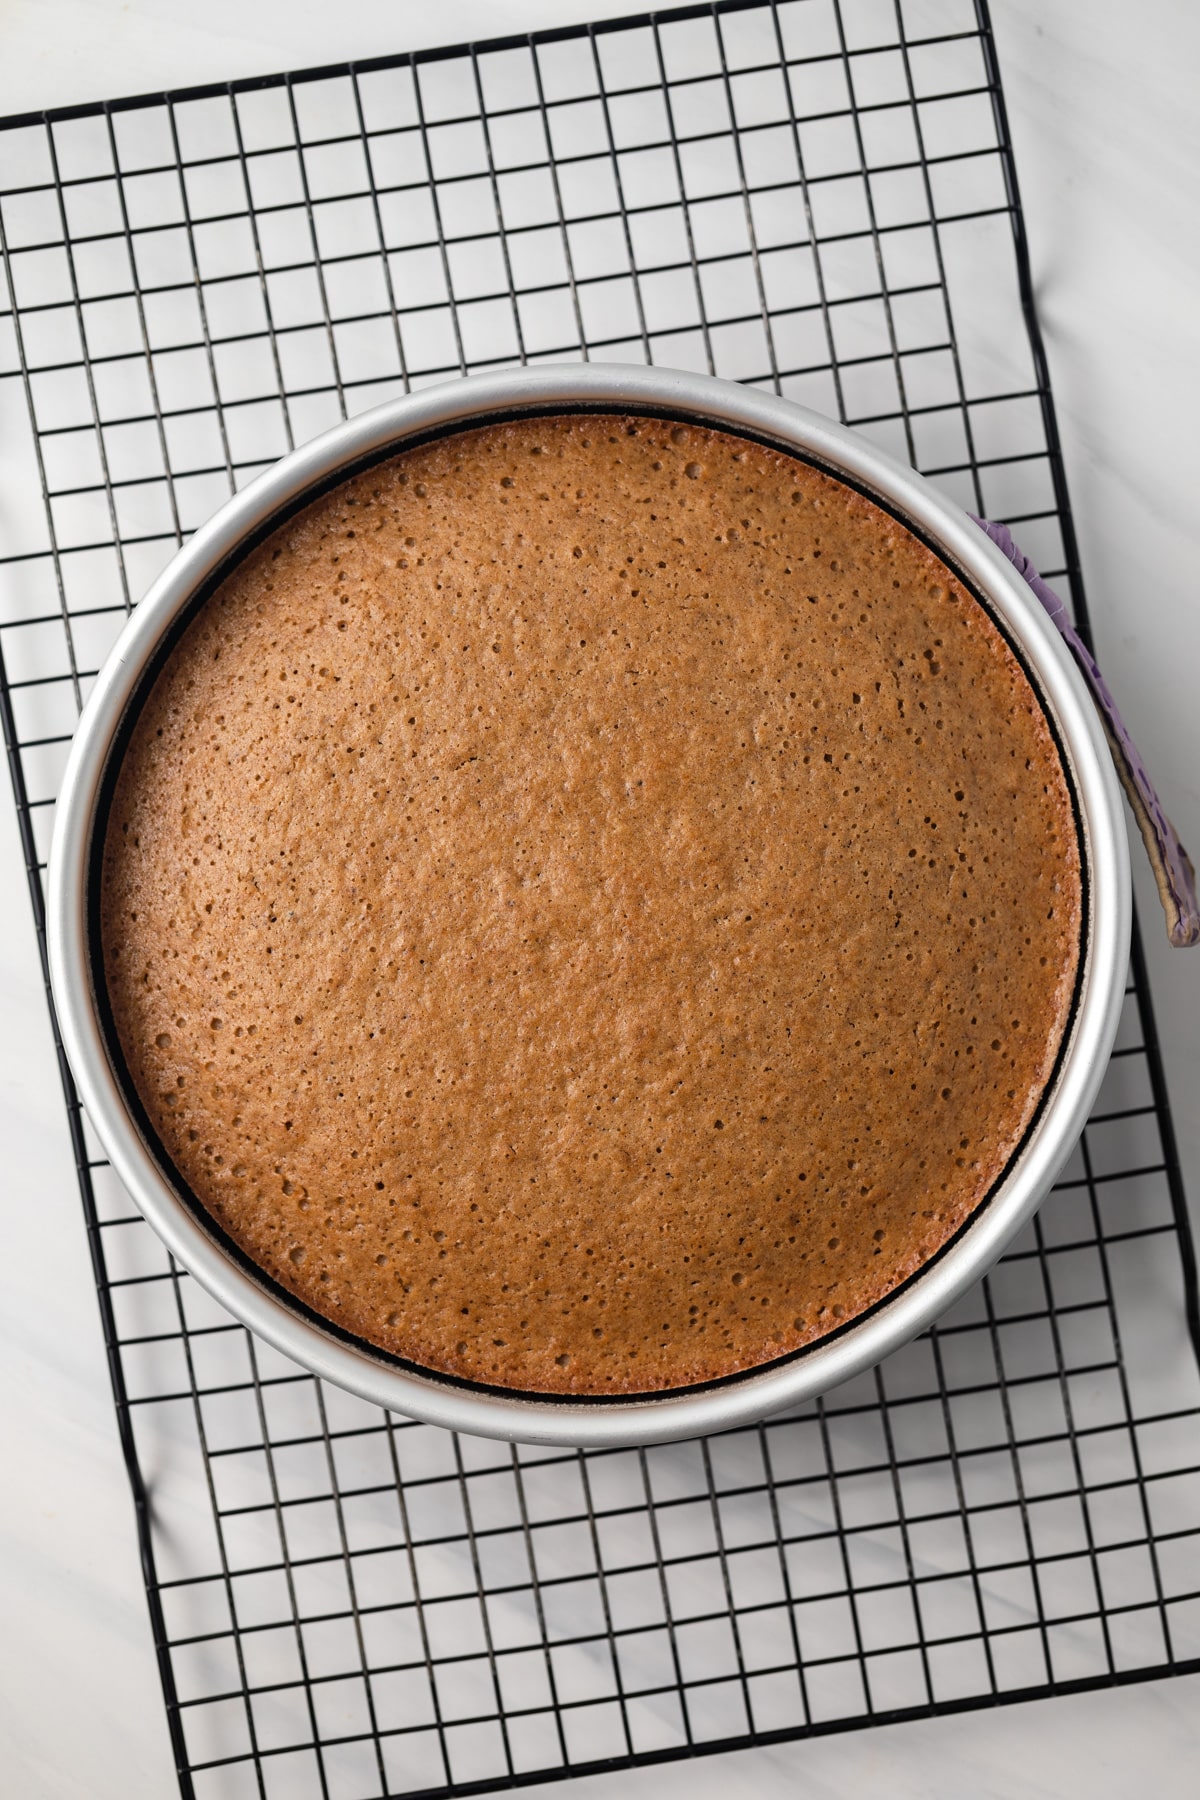 Spice cake in cake pan.